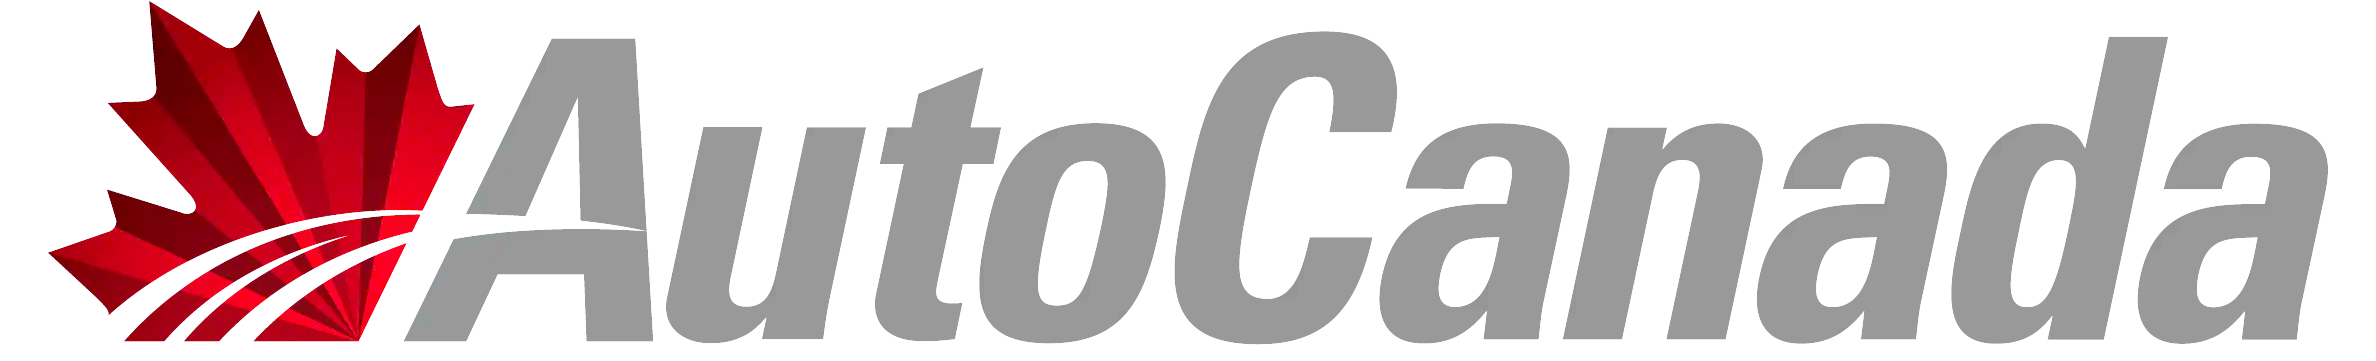 AutoCanada logo